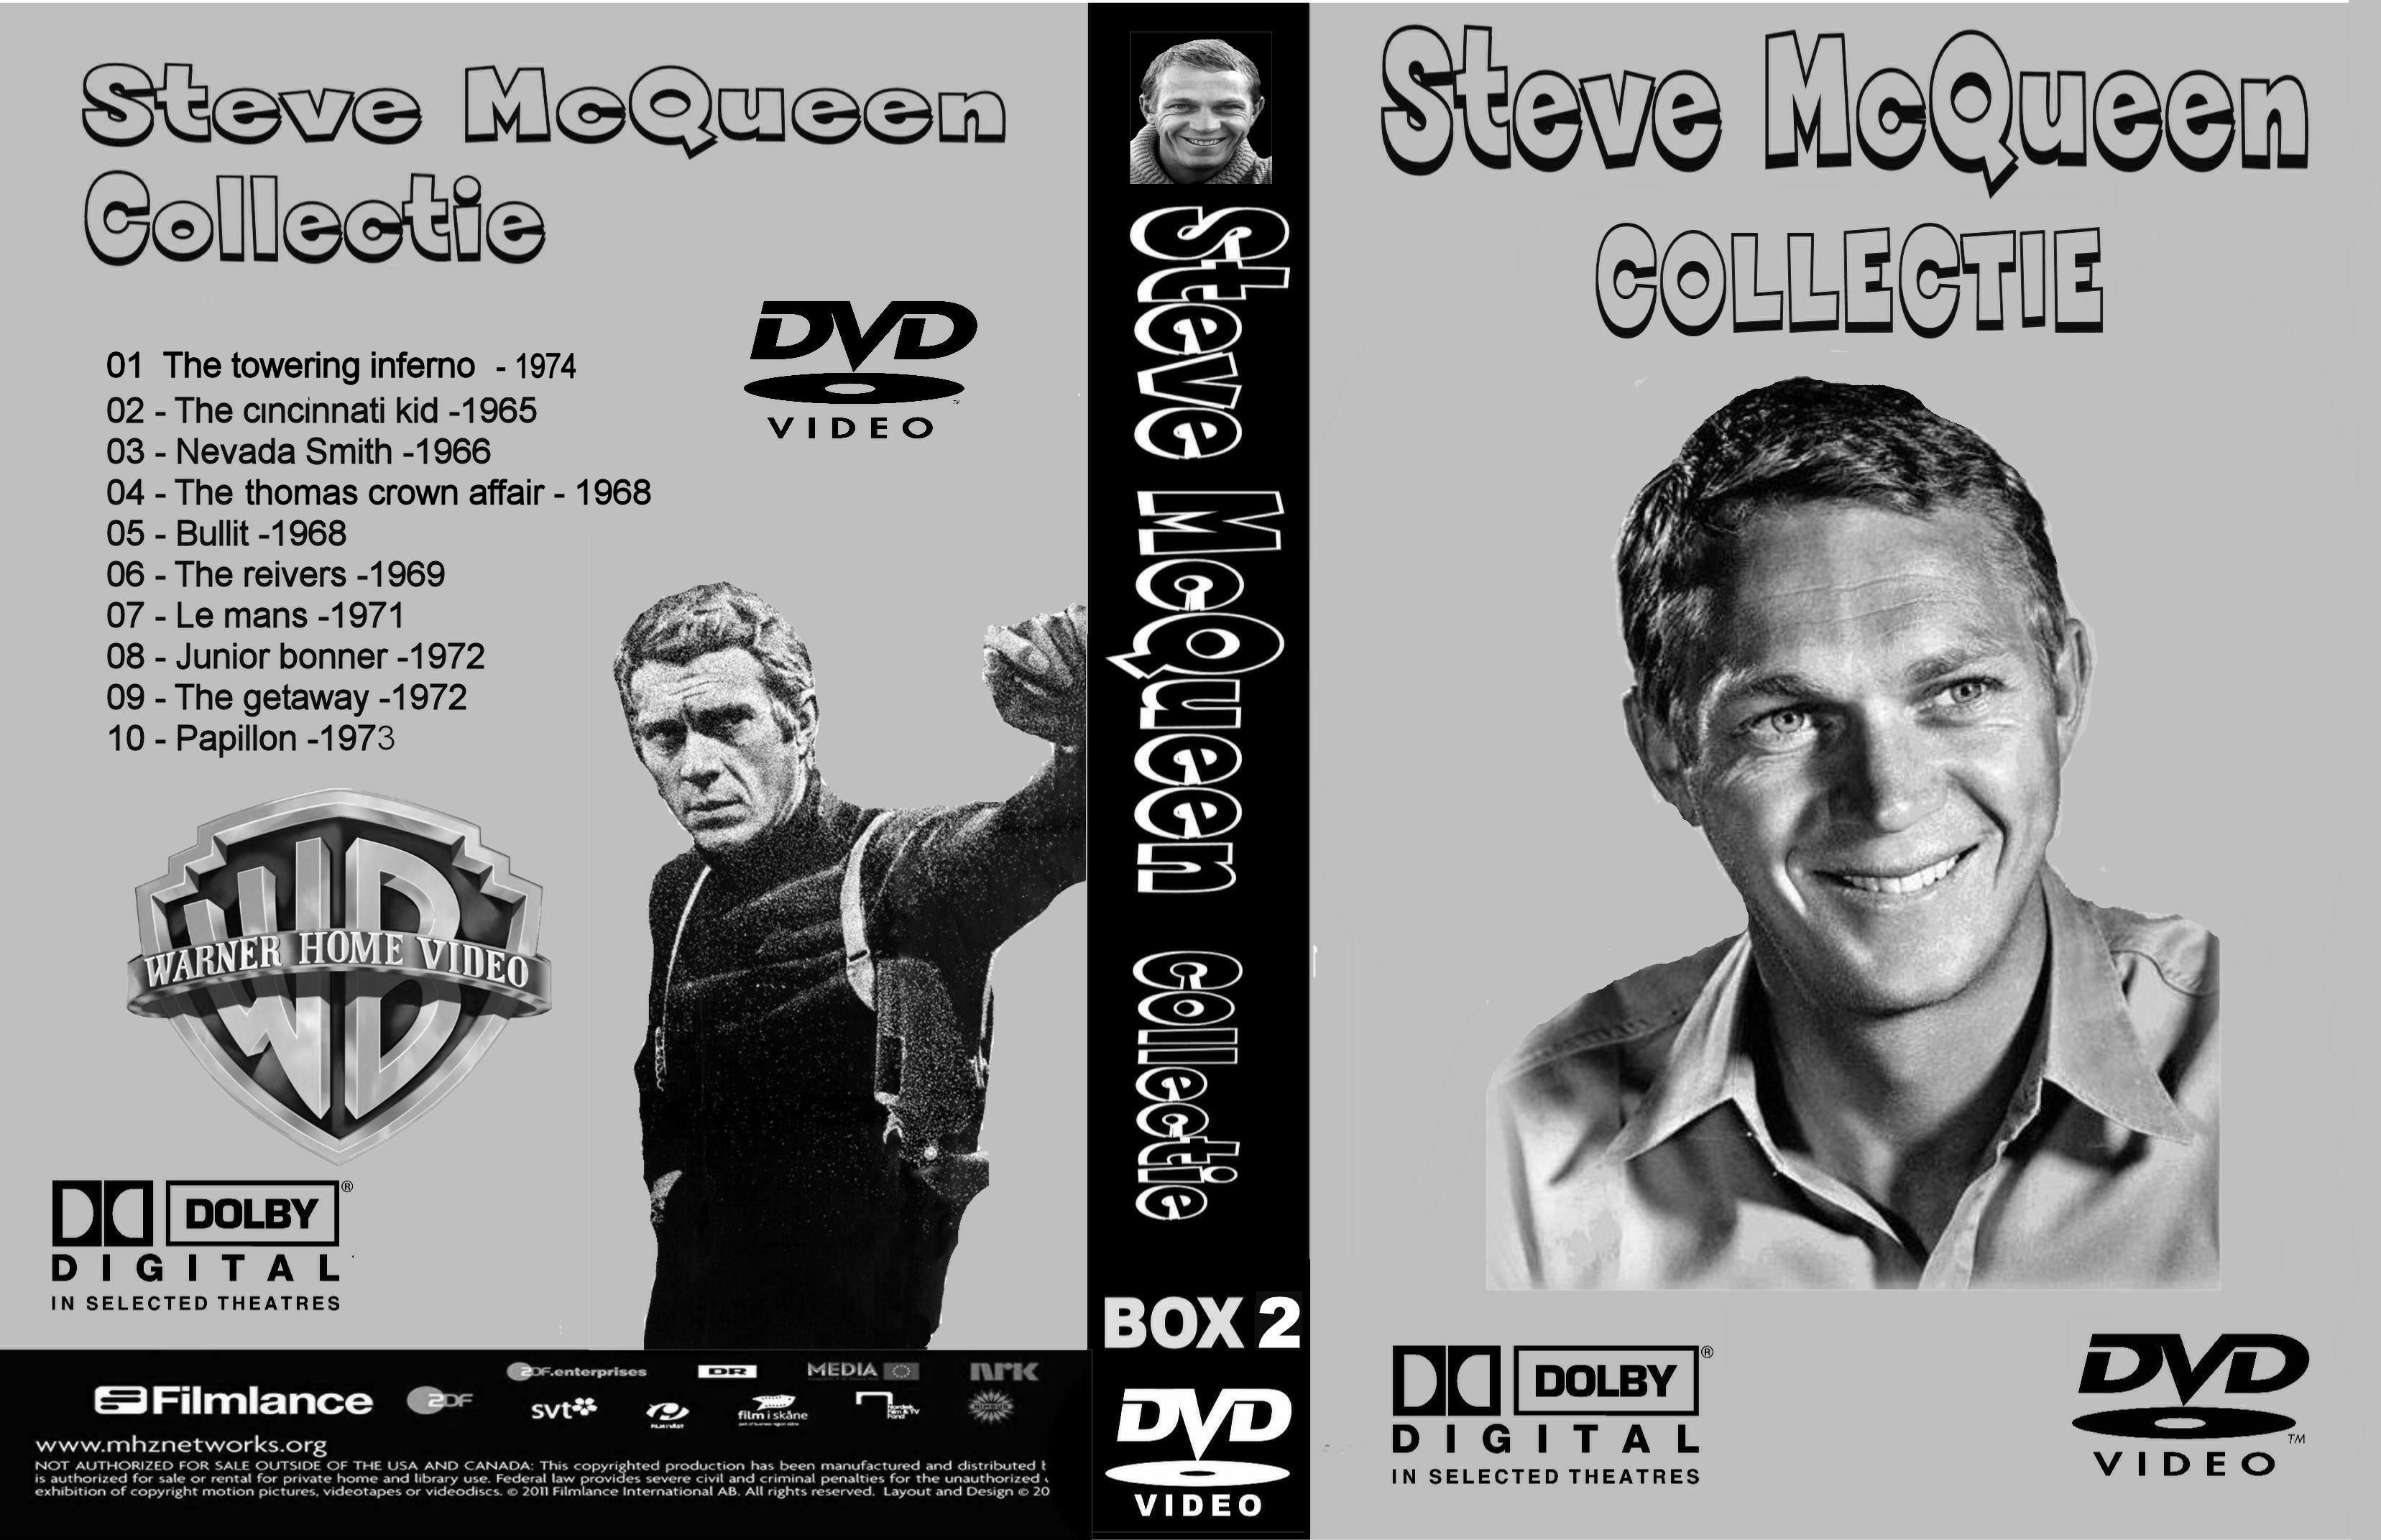 Steve McQueen Collectie Box 2 DvD 10 van 10